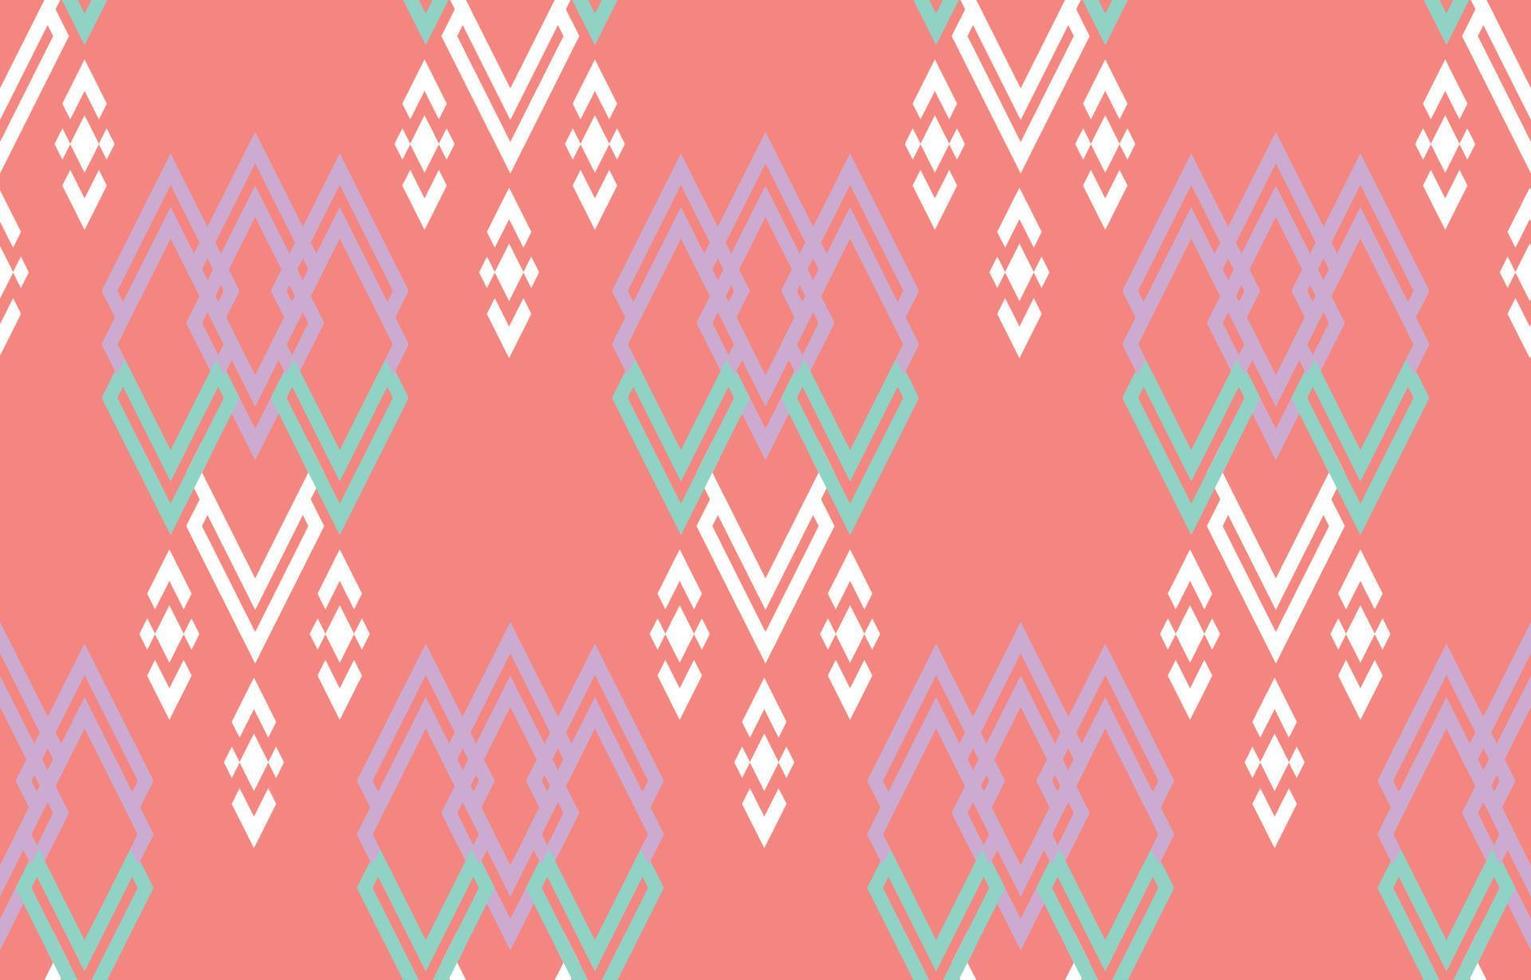 arte de patrón rosa étnico. patrón impecable en estilo tribal, bordado folclórico y mexicano. estampado de adornos de arte geométrico azteca.diseño para alfombras, papel pintado, ropa, envoltura, tela, cubierta, textil vector